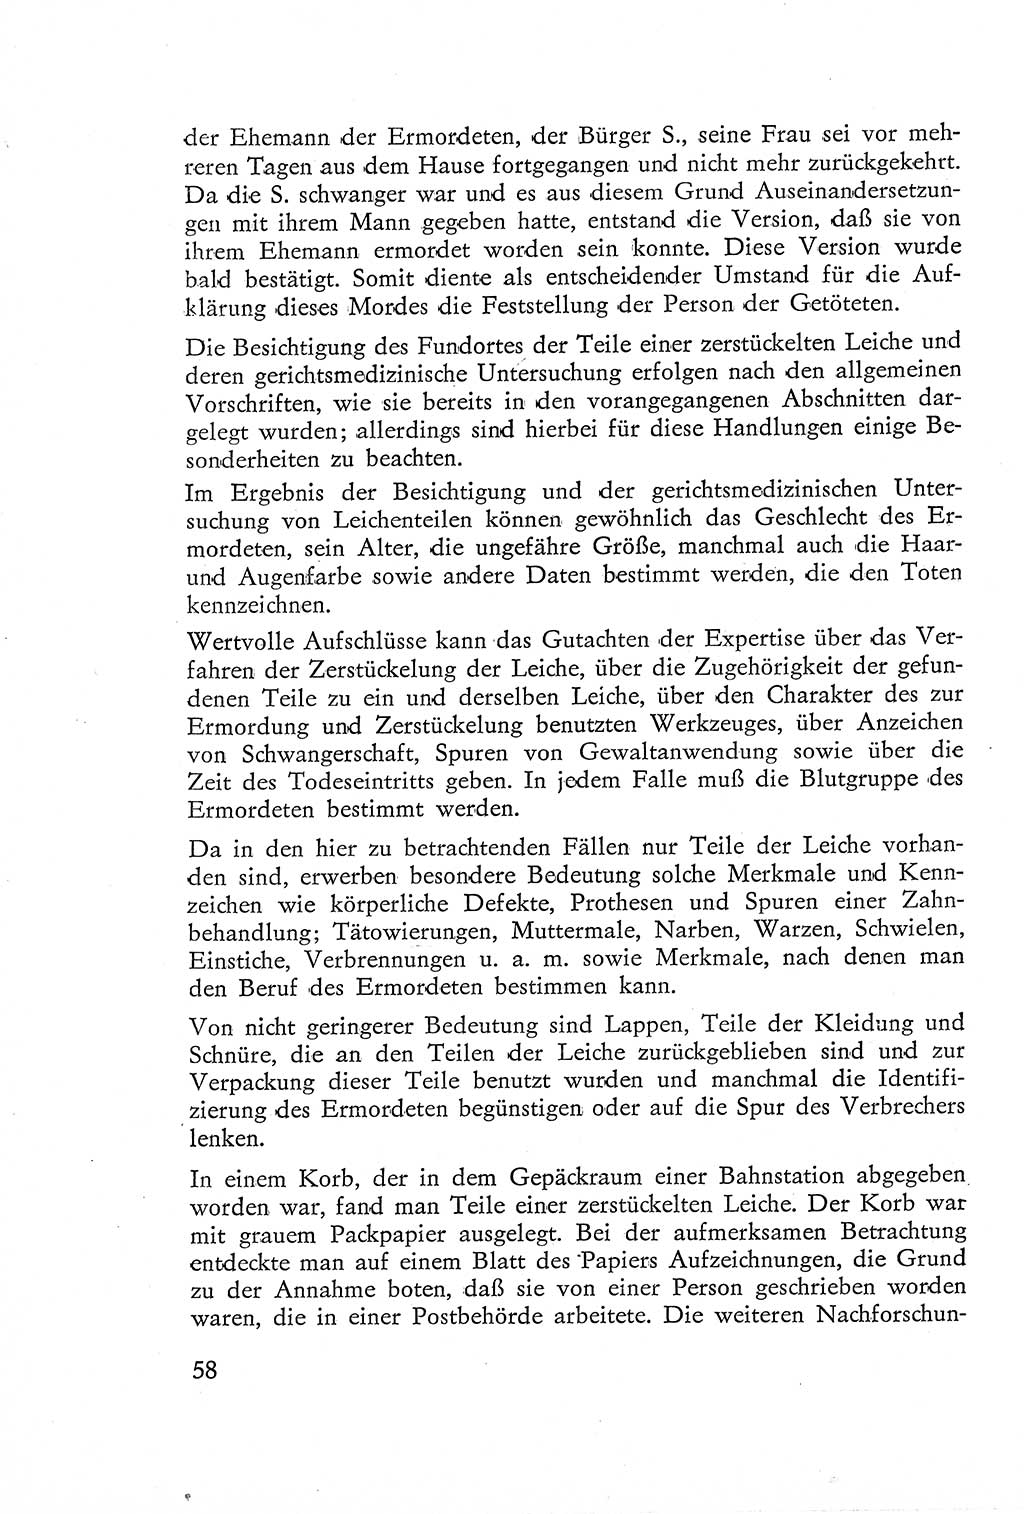 Die Untersuchung einzelner Verbrechensarten [Deutsche Demokratische Republik (DDR)] 1960, Seite 58 (Unters. Verbr.-Art. DDR 1960, S. 58)